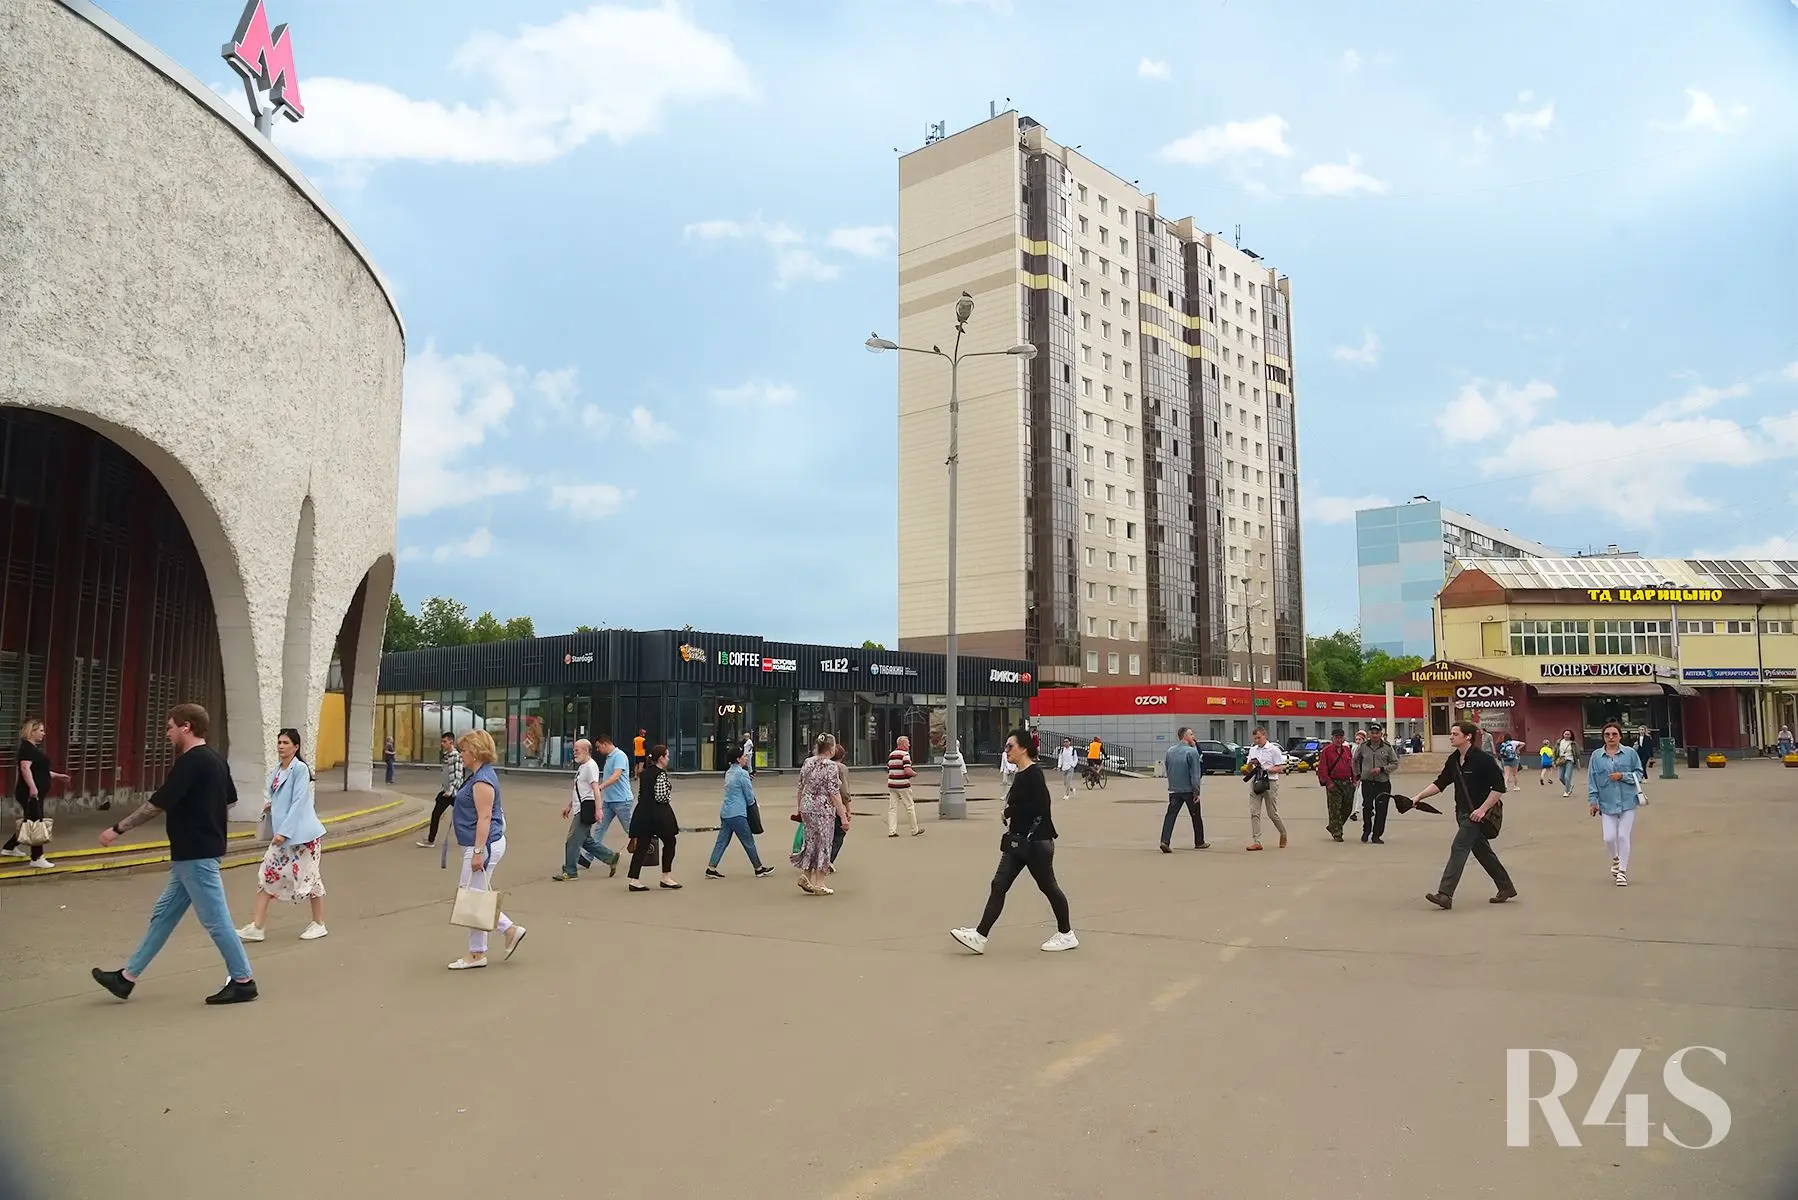 Аренда торговых помещений площадью 16.6 - 21 м2 в Москве:  Шипиловский проезд, 39к3 R4S | Realty4Sale